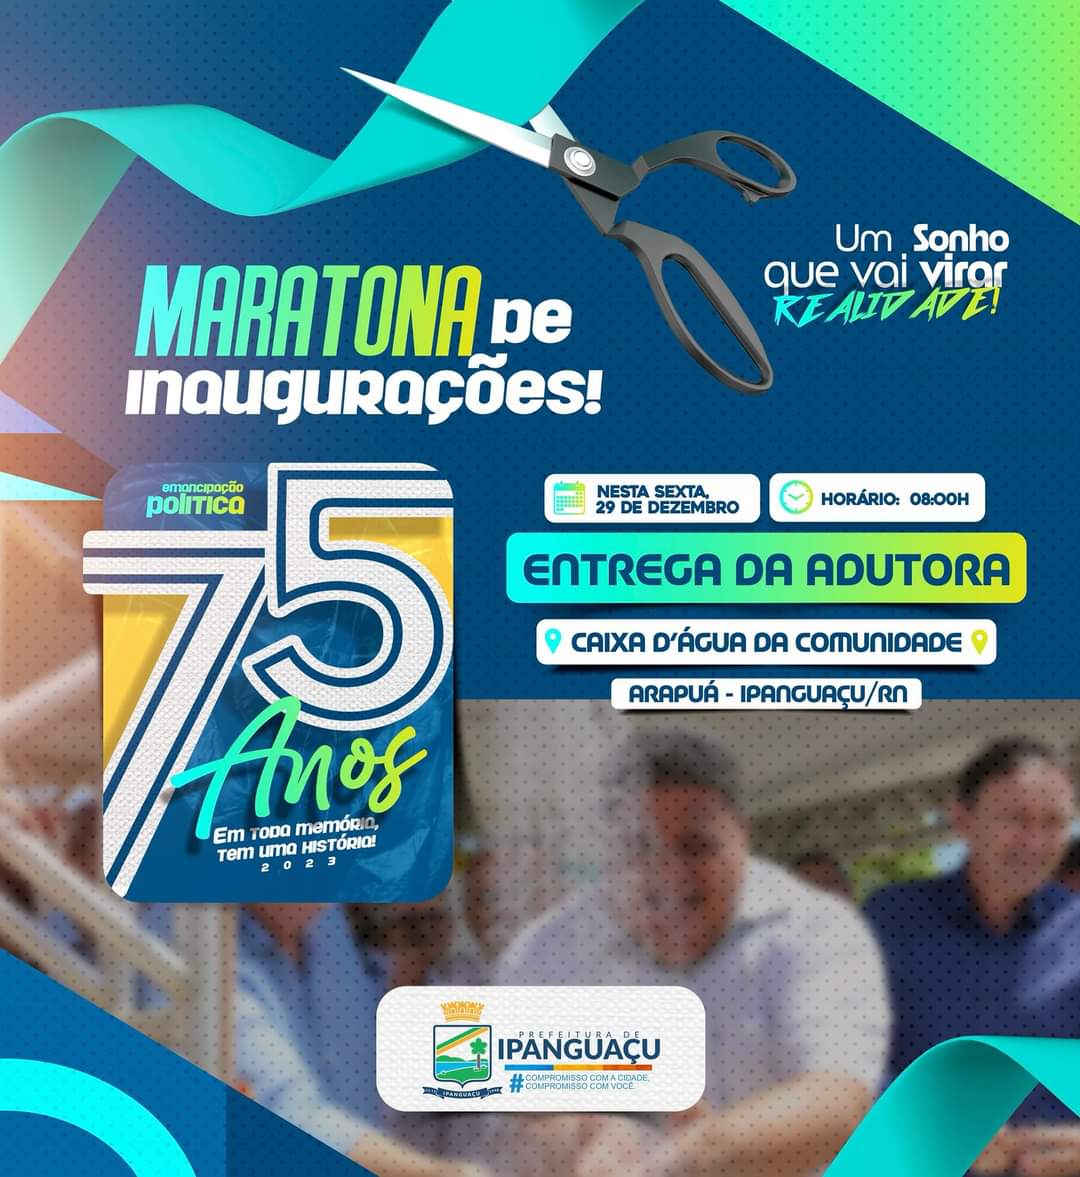 Maratona de Inaugurações: Prefeitura vai entregar Adutora de Arapuá nesta sexta